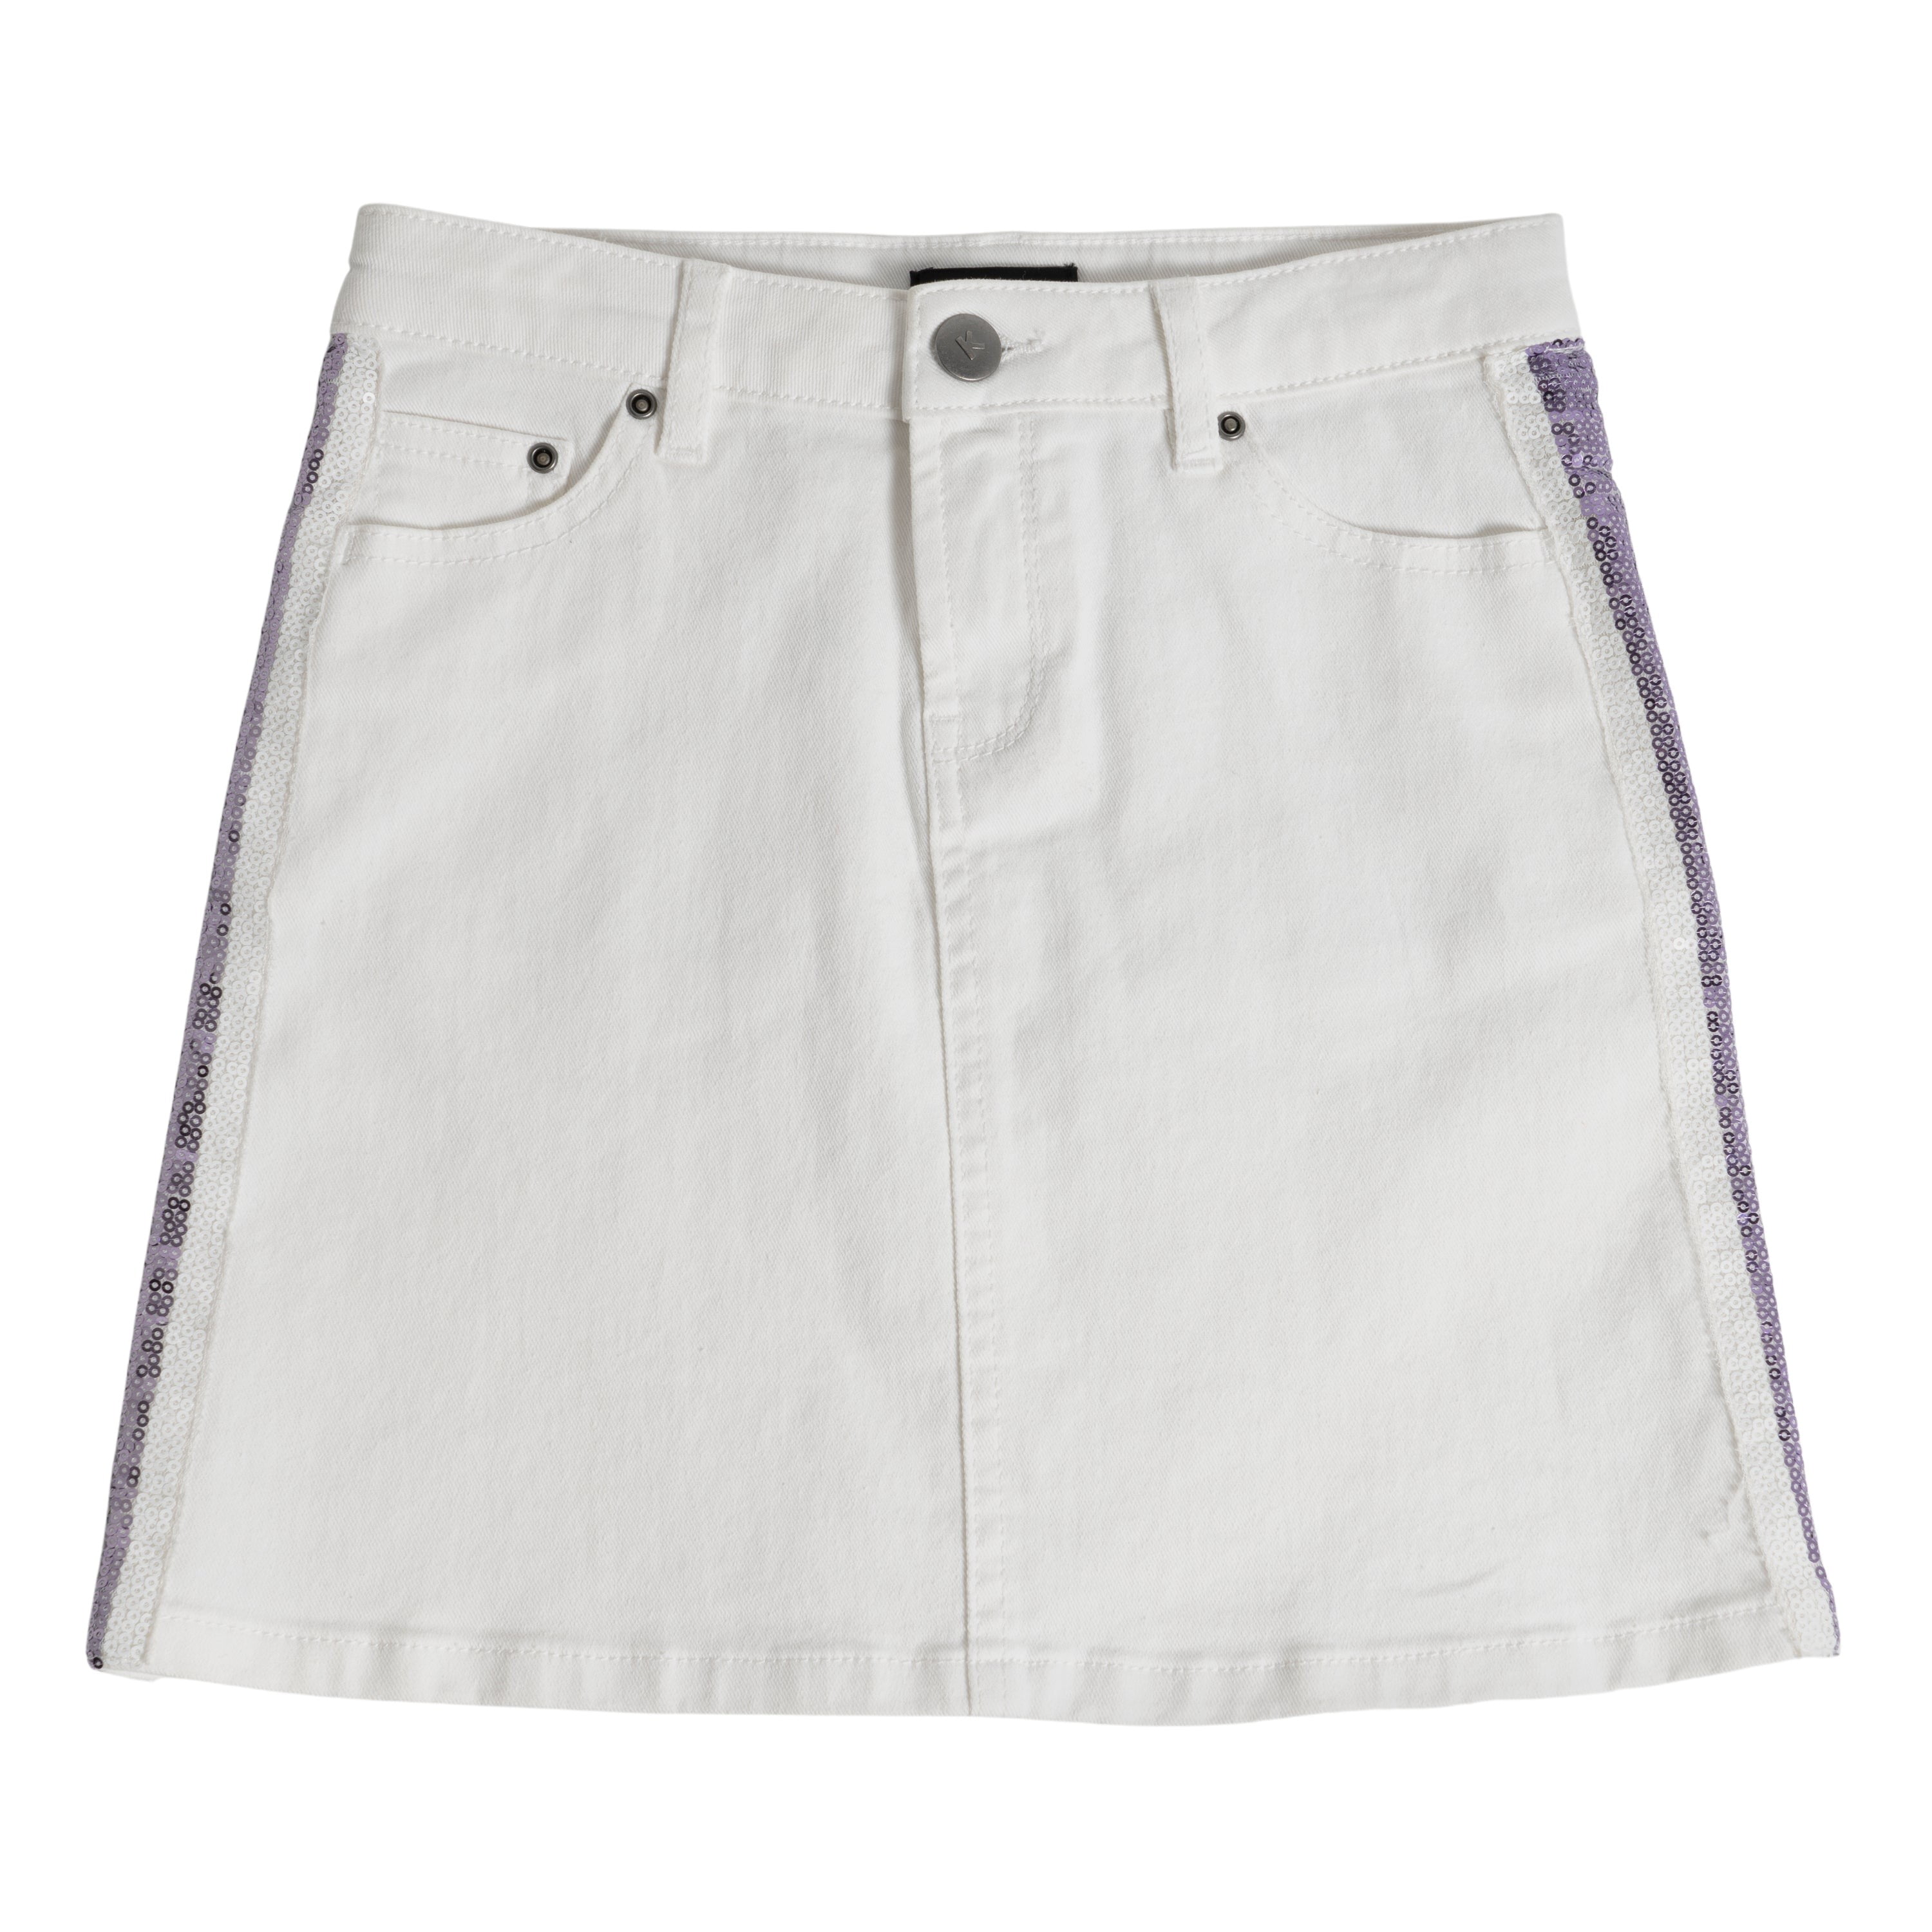 Buy White Kids Skirt. Wrap Girls Skirt. Midi Teen Skirt. Summer Kids Skirt.  100% Pure Linen italy. Online in India - Etsy